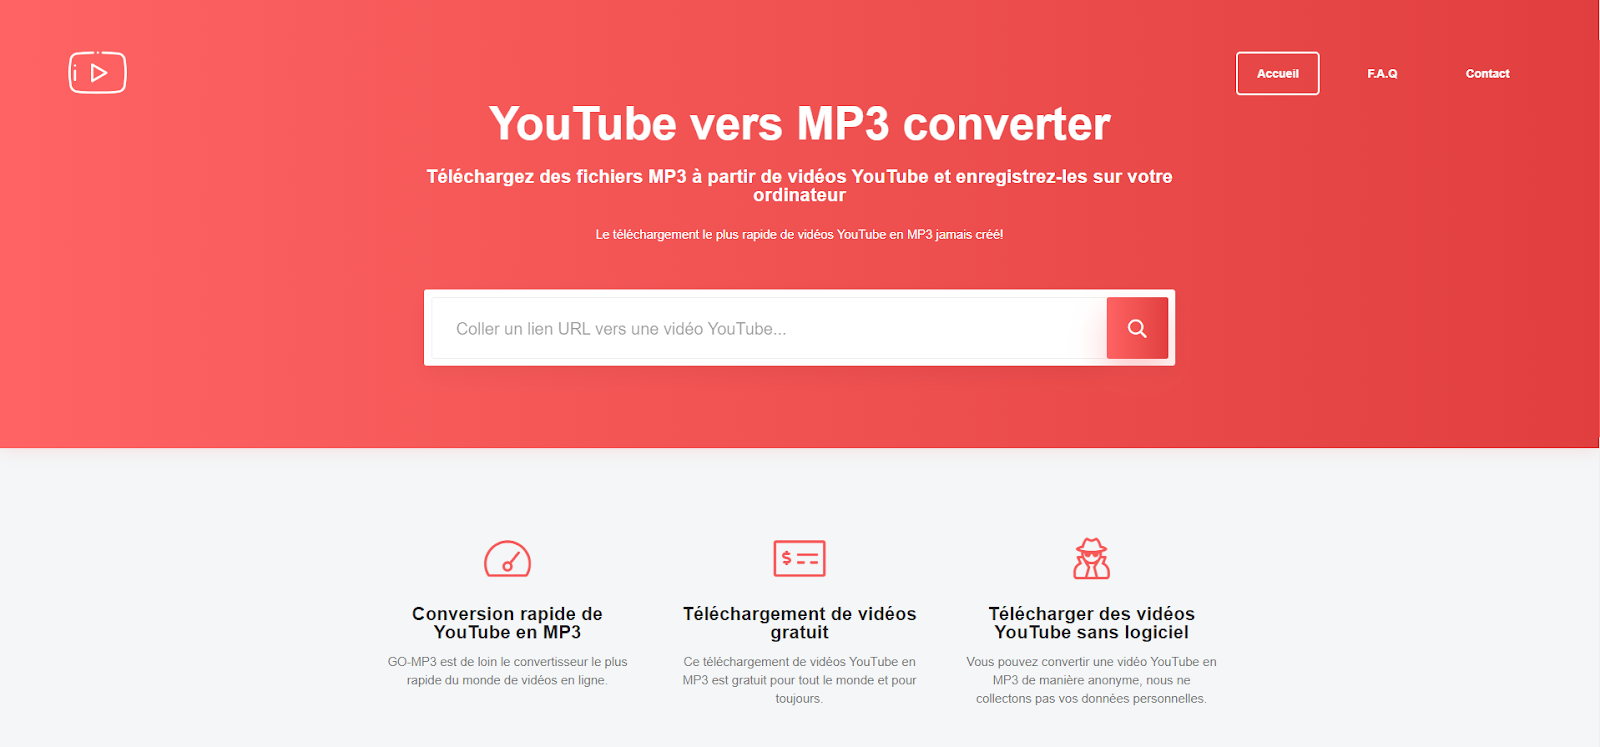 Comment convertir une vidéo depuis YouTube en MP3 avec un convertisseur ?